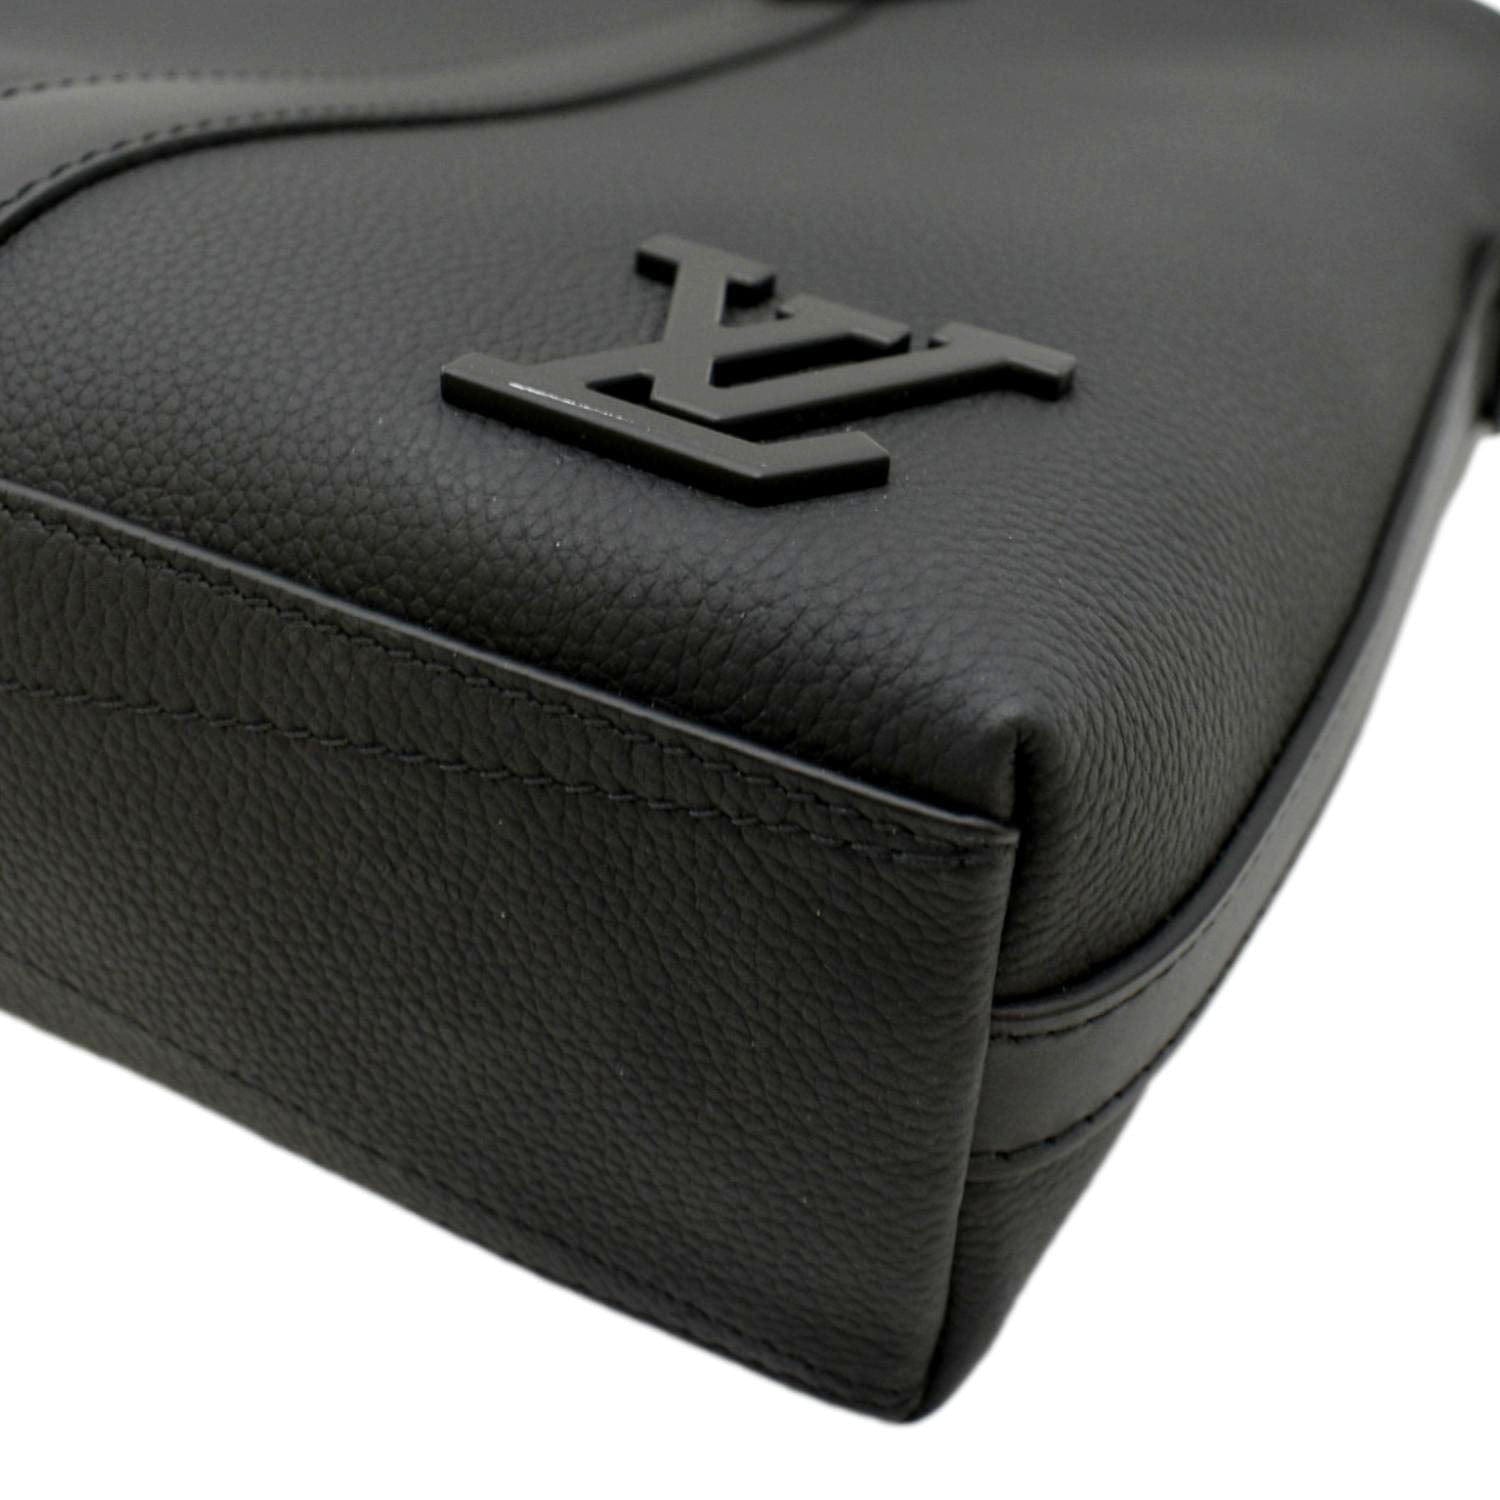 Takeoff Sling Bag - Luxury LV Aerogram Black